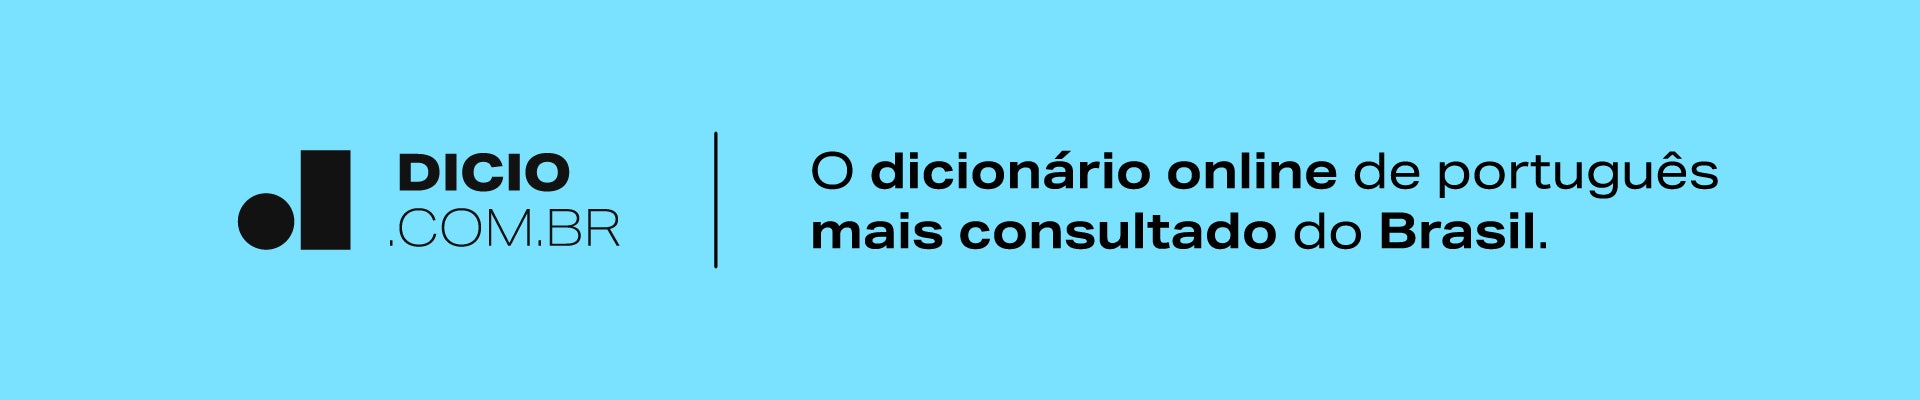 Simplificar - Dicio, Dicionário Online de Português